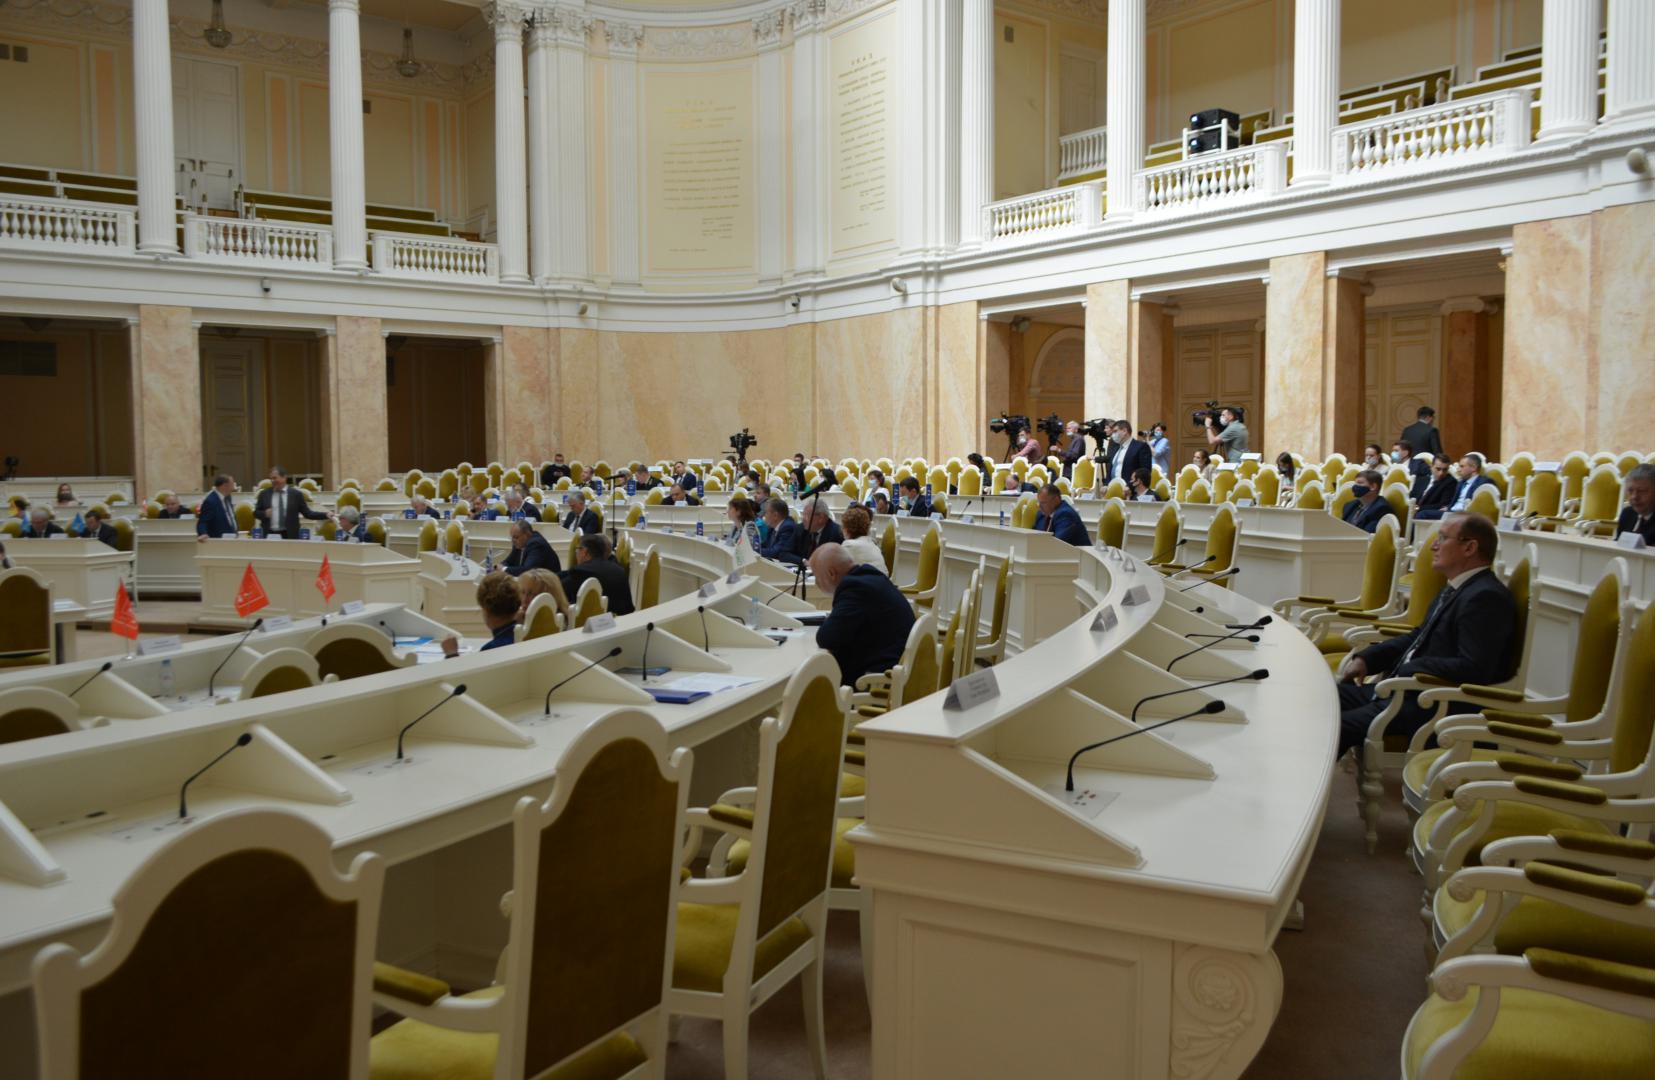 Контрольно-счетная палата Санкт-Петербурга представила отчет о деятельности в 2020 году